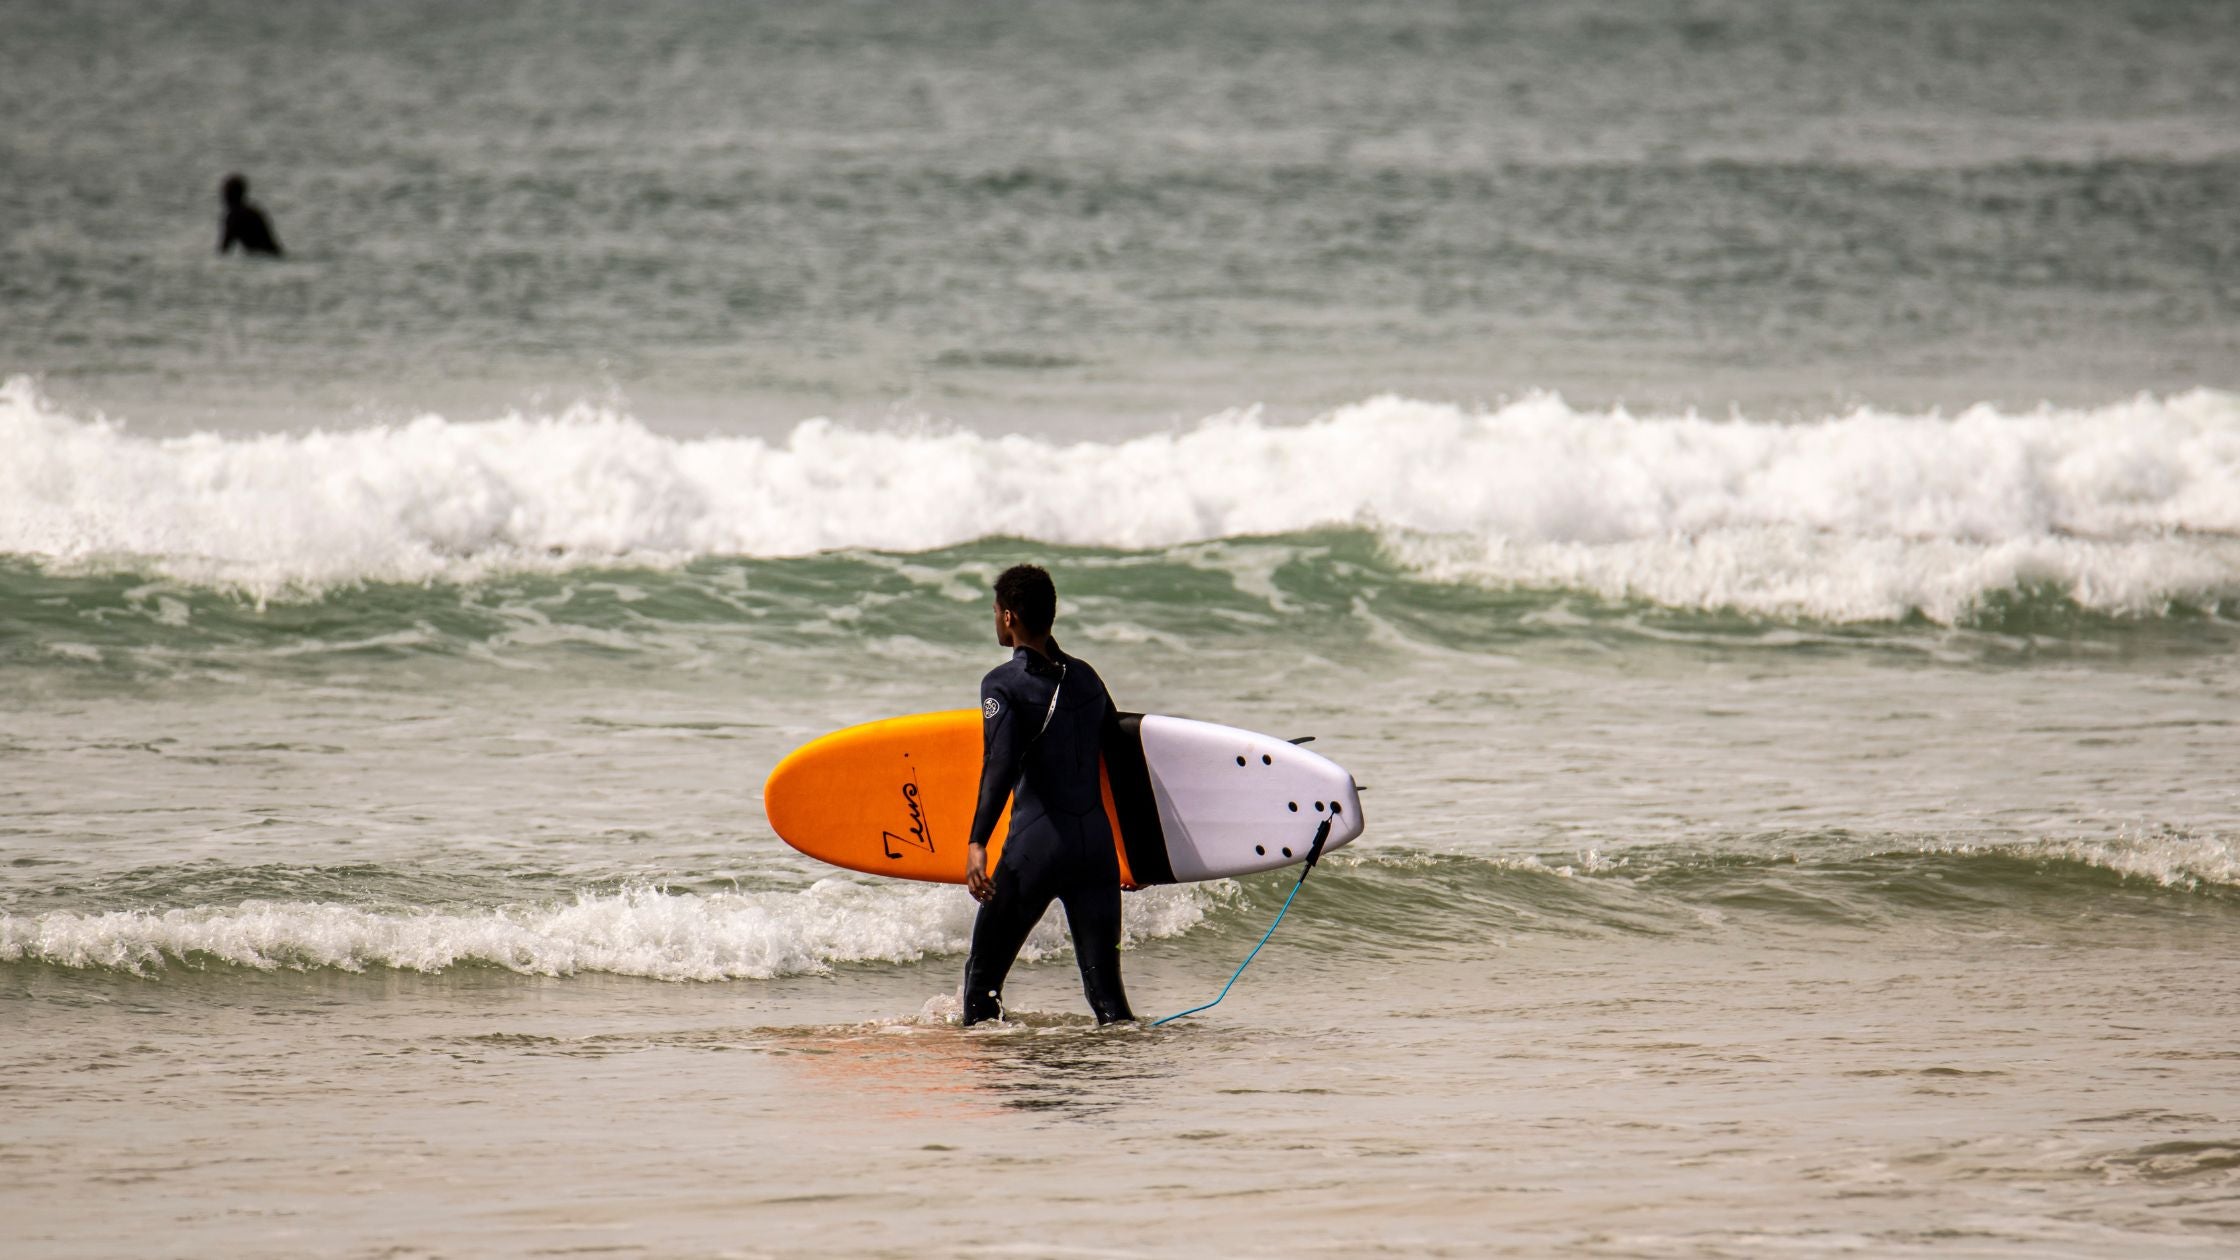 Un surfer en train de se mettre à l’eau avec une planche de surf en mousse